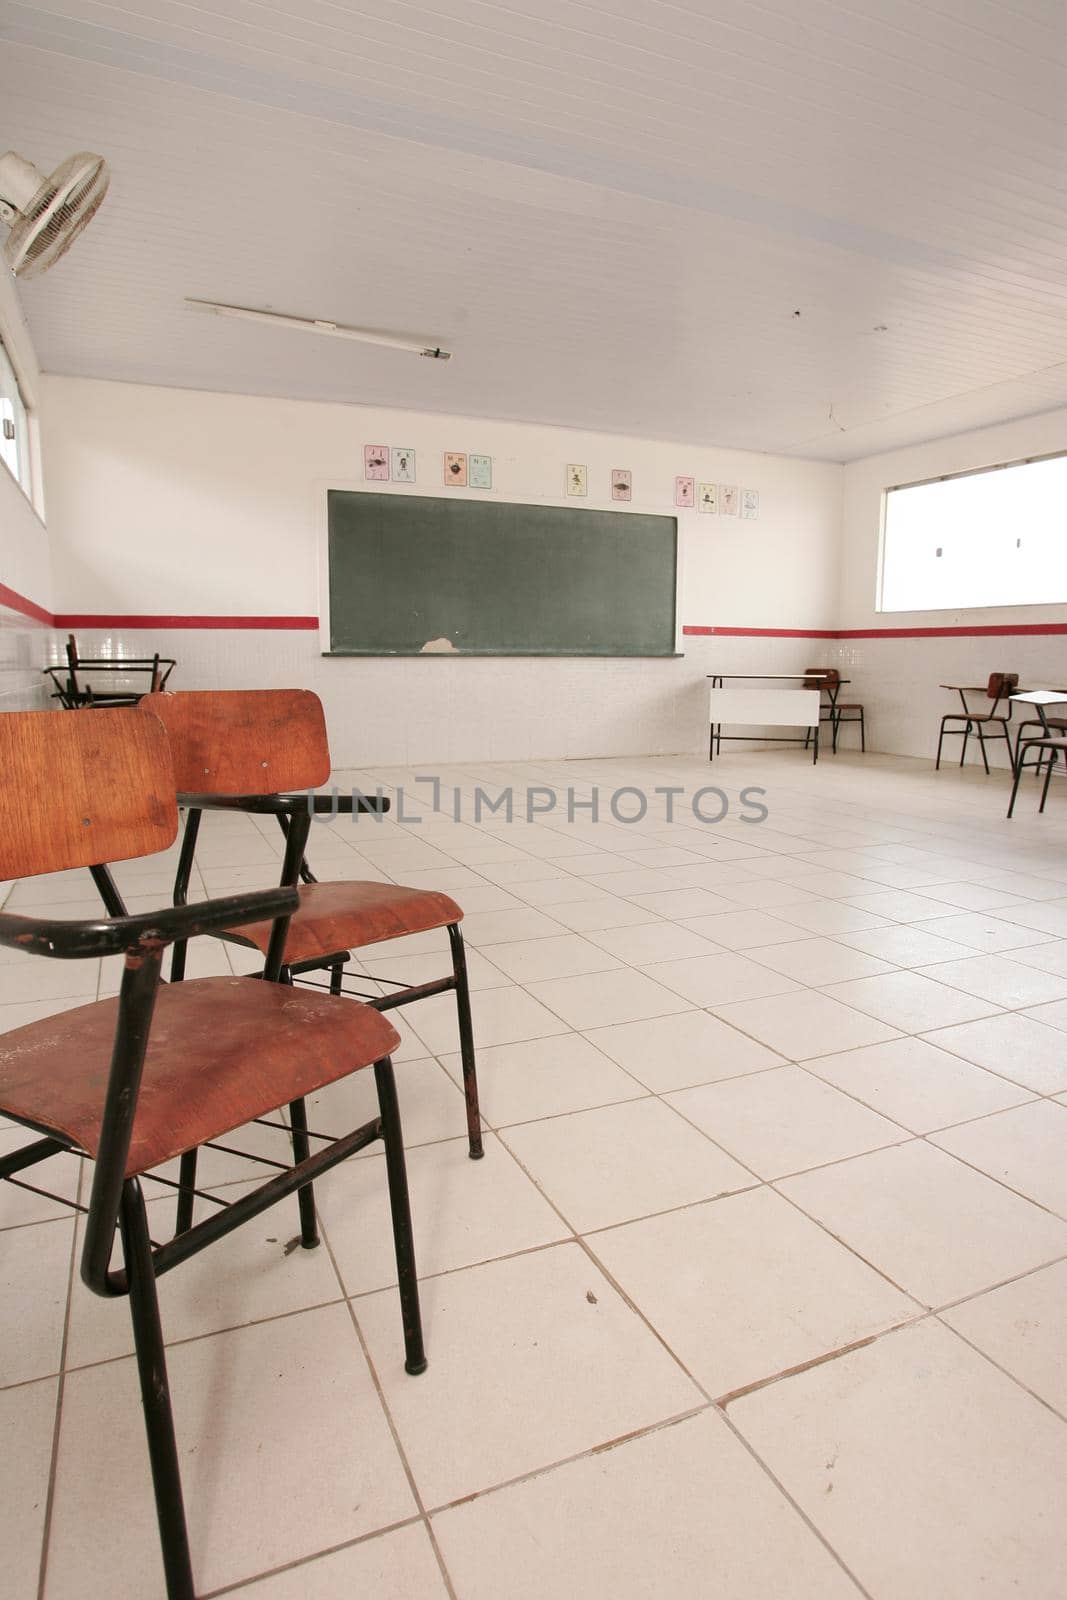 broken school desk in public school by joasouza